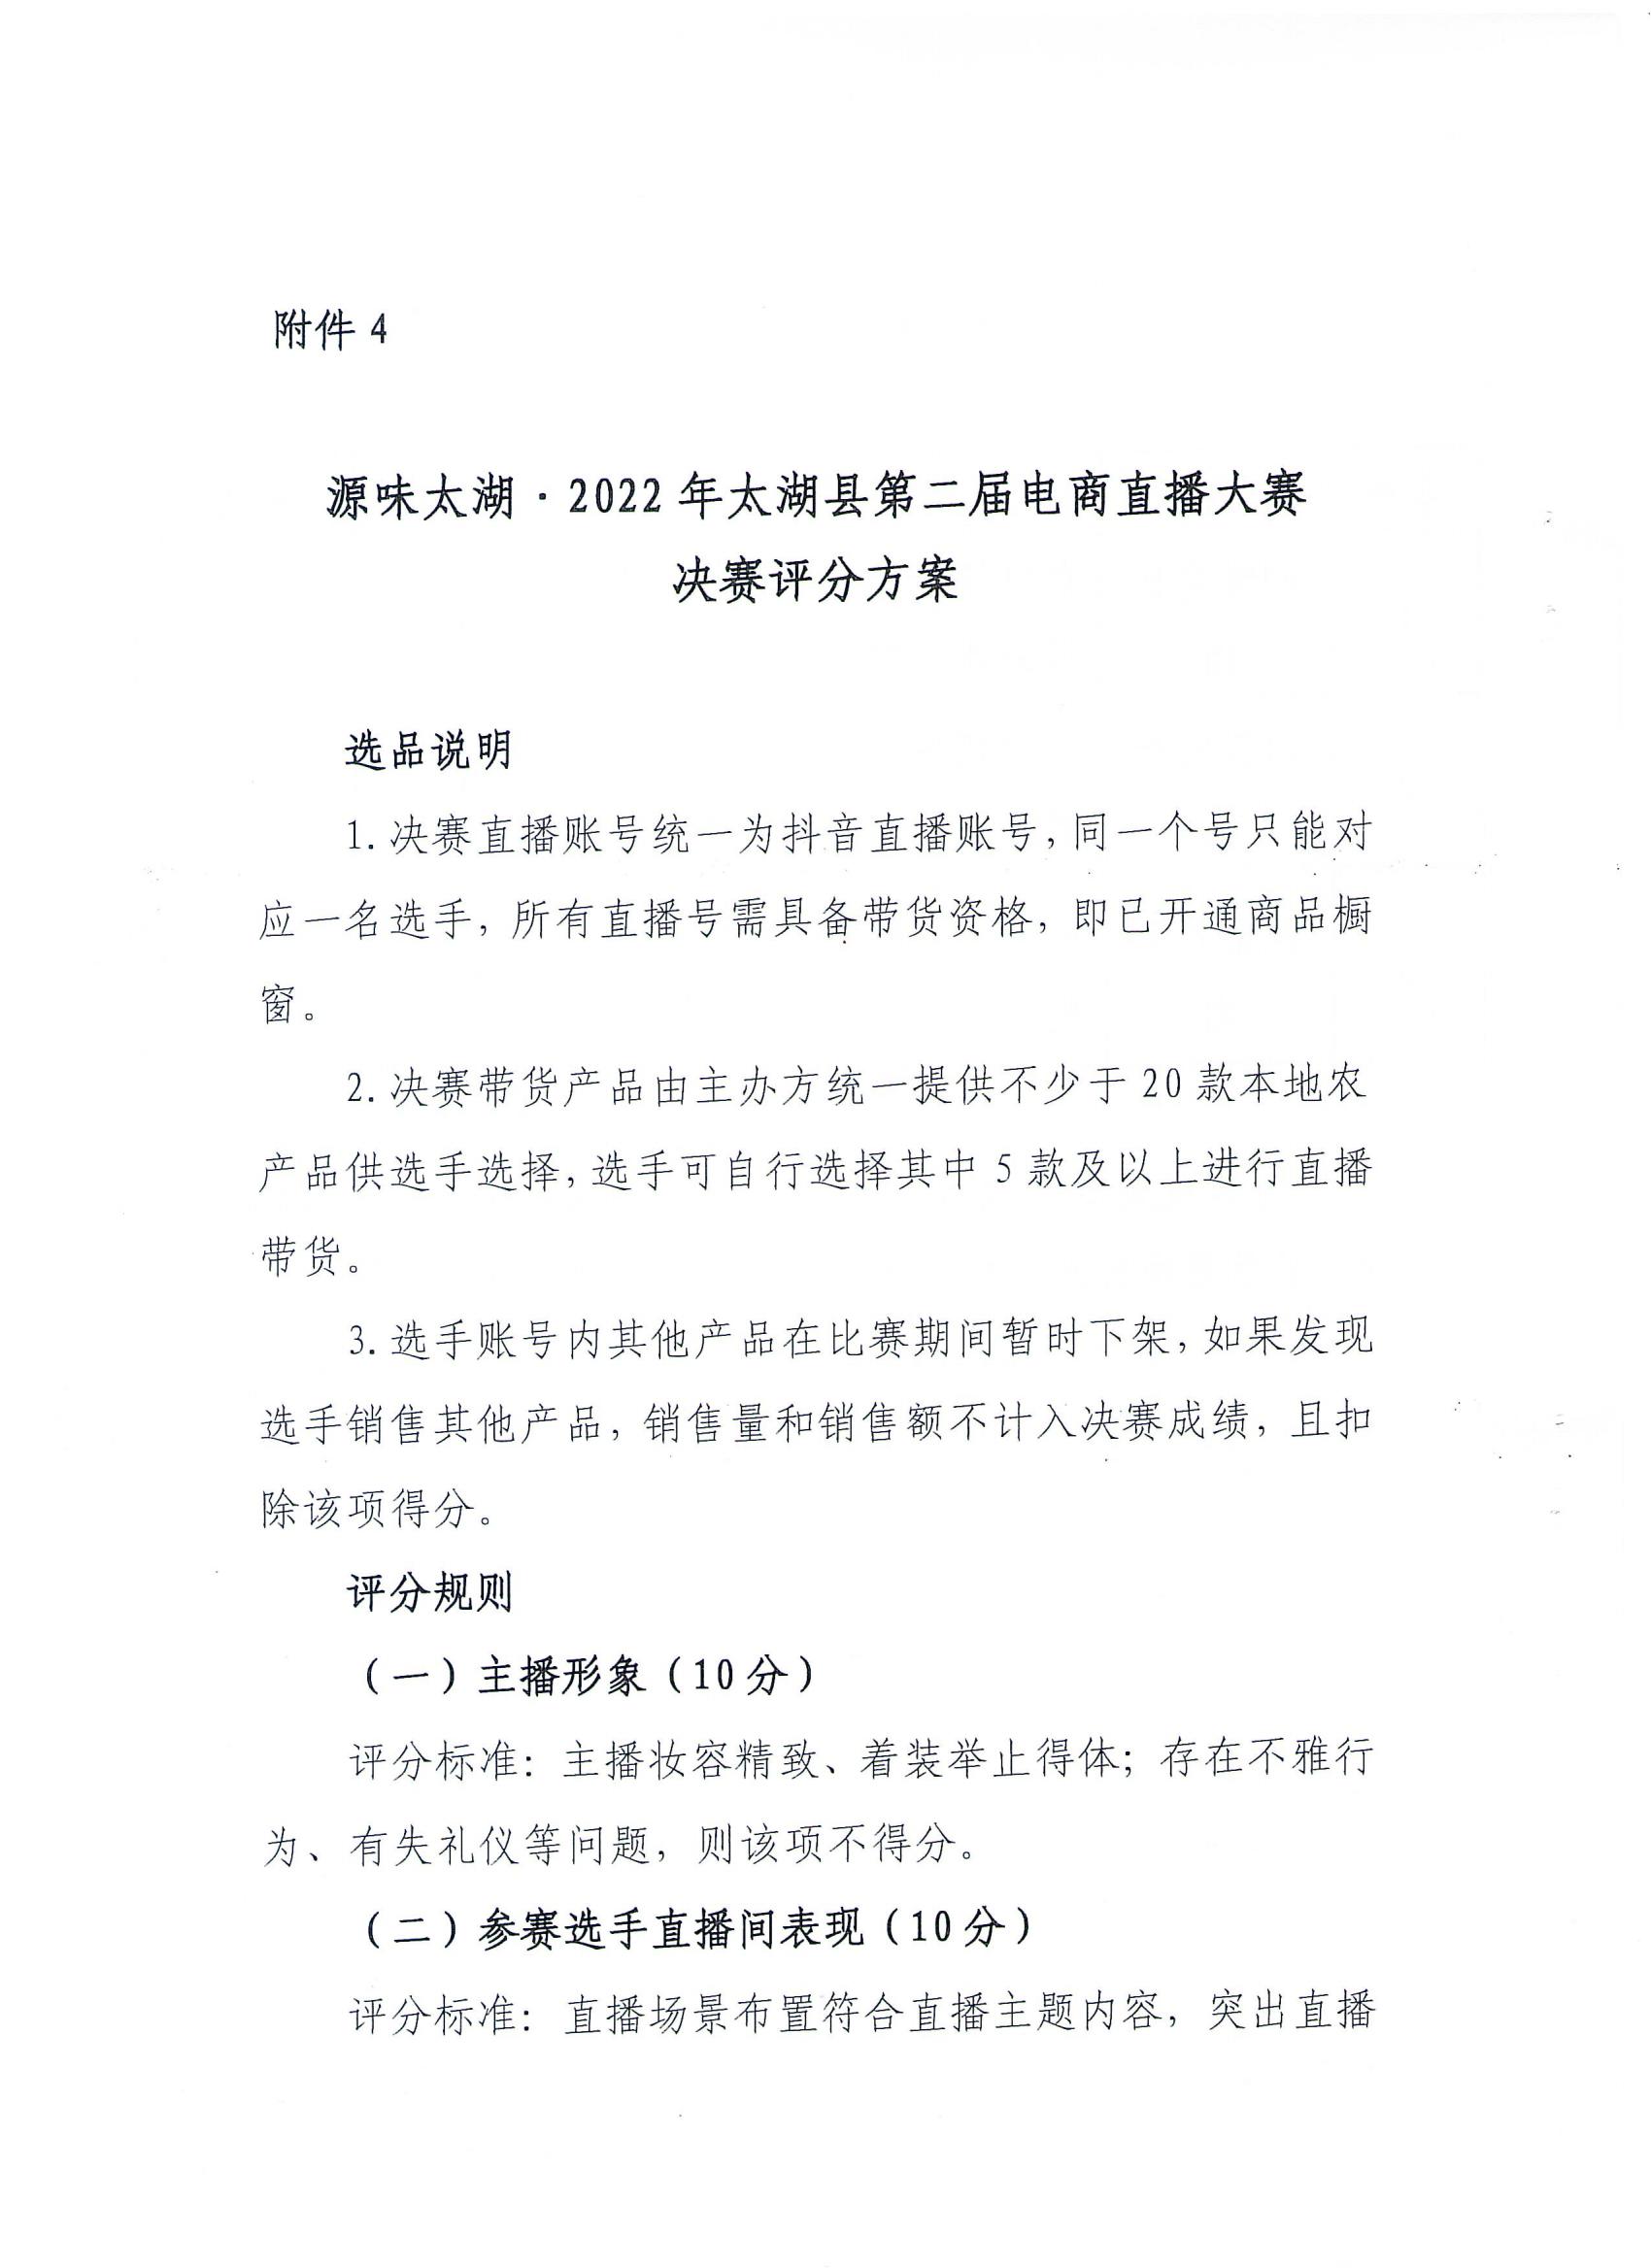 关于开展2022年太湖县第二届电商直播大赛的通知(1)_11.jpg